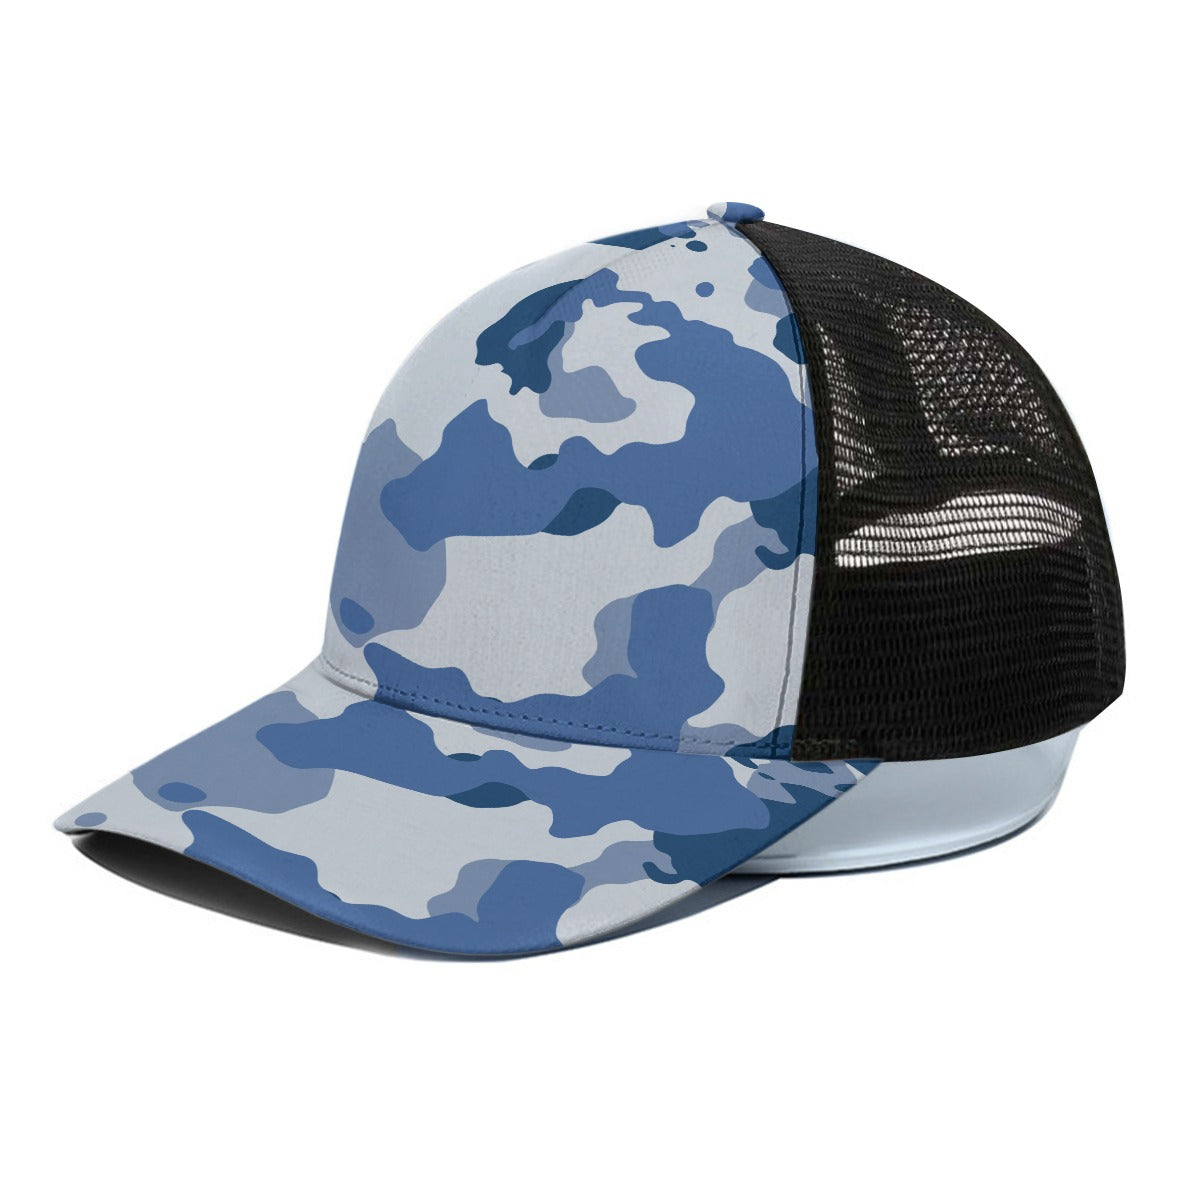 Unisex Peaked Cap With Black Half-mesh